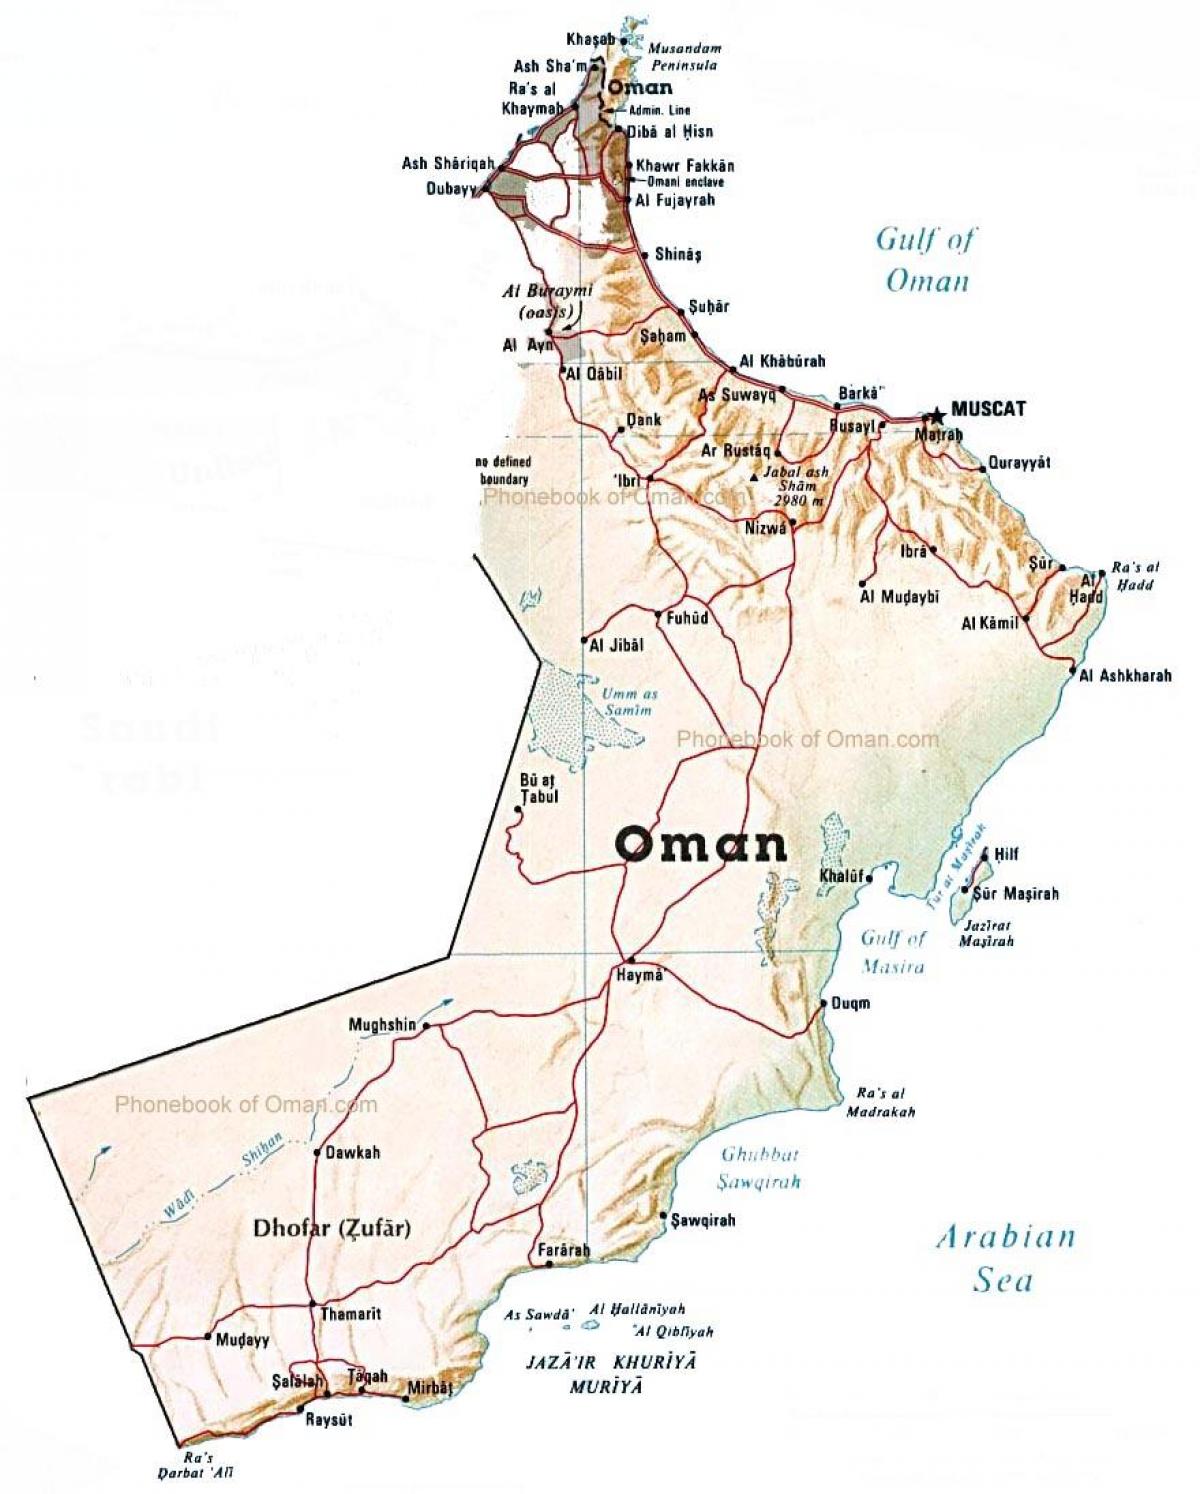 Omana zemlji mapu